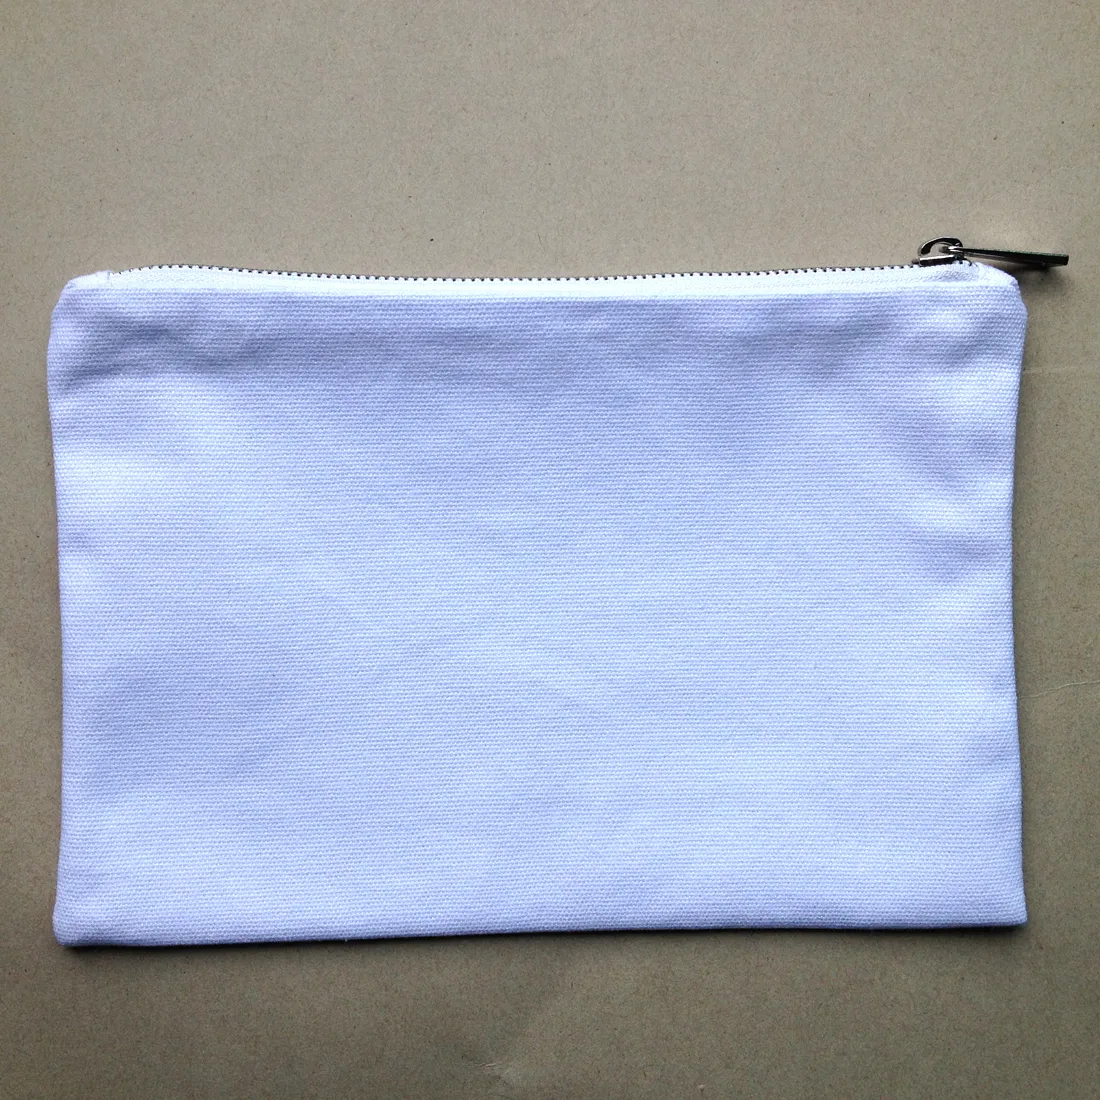 12oz черный / белой хлопчатобумажный мешок состава с золотой / серебряной молнией и соответствием цвета подкладка пустой косметическими мешками туалетного мешок